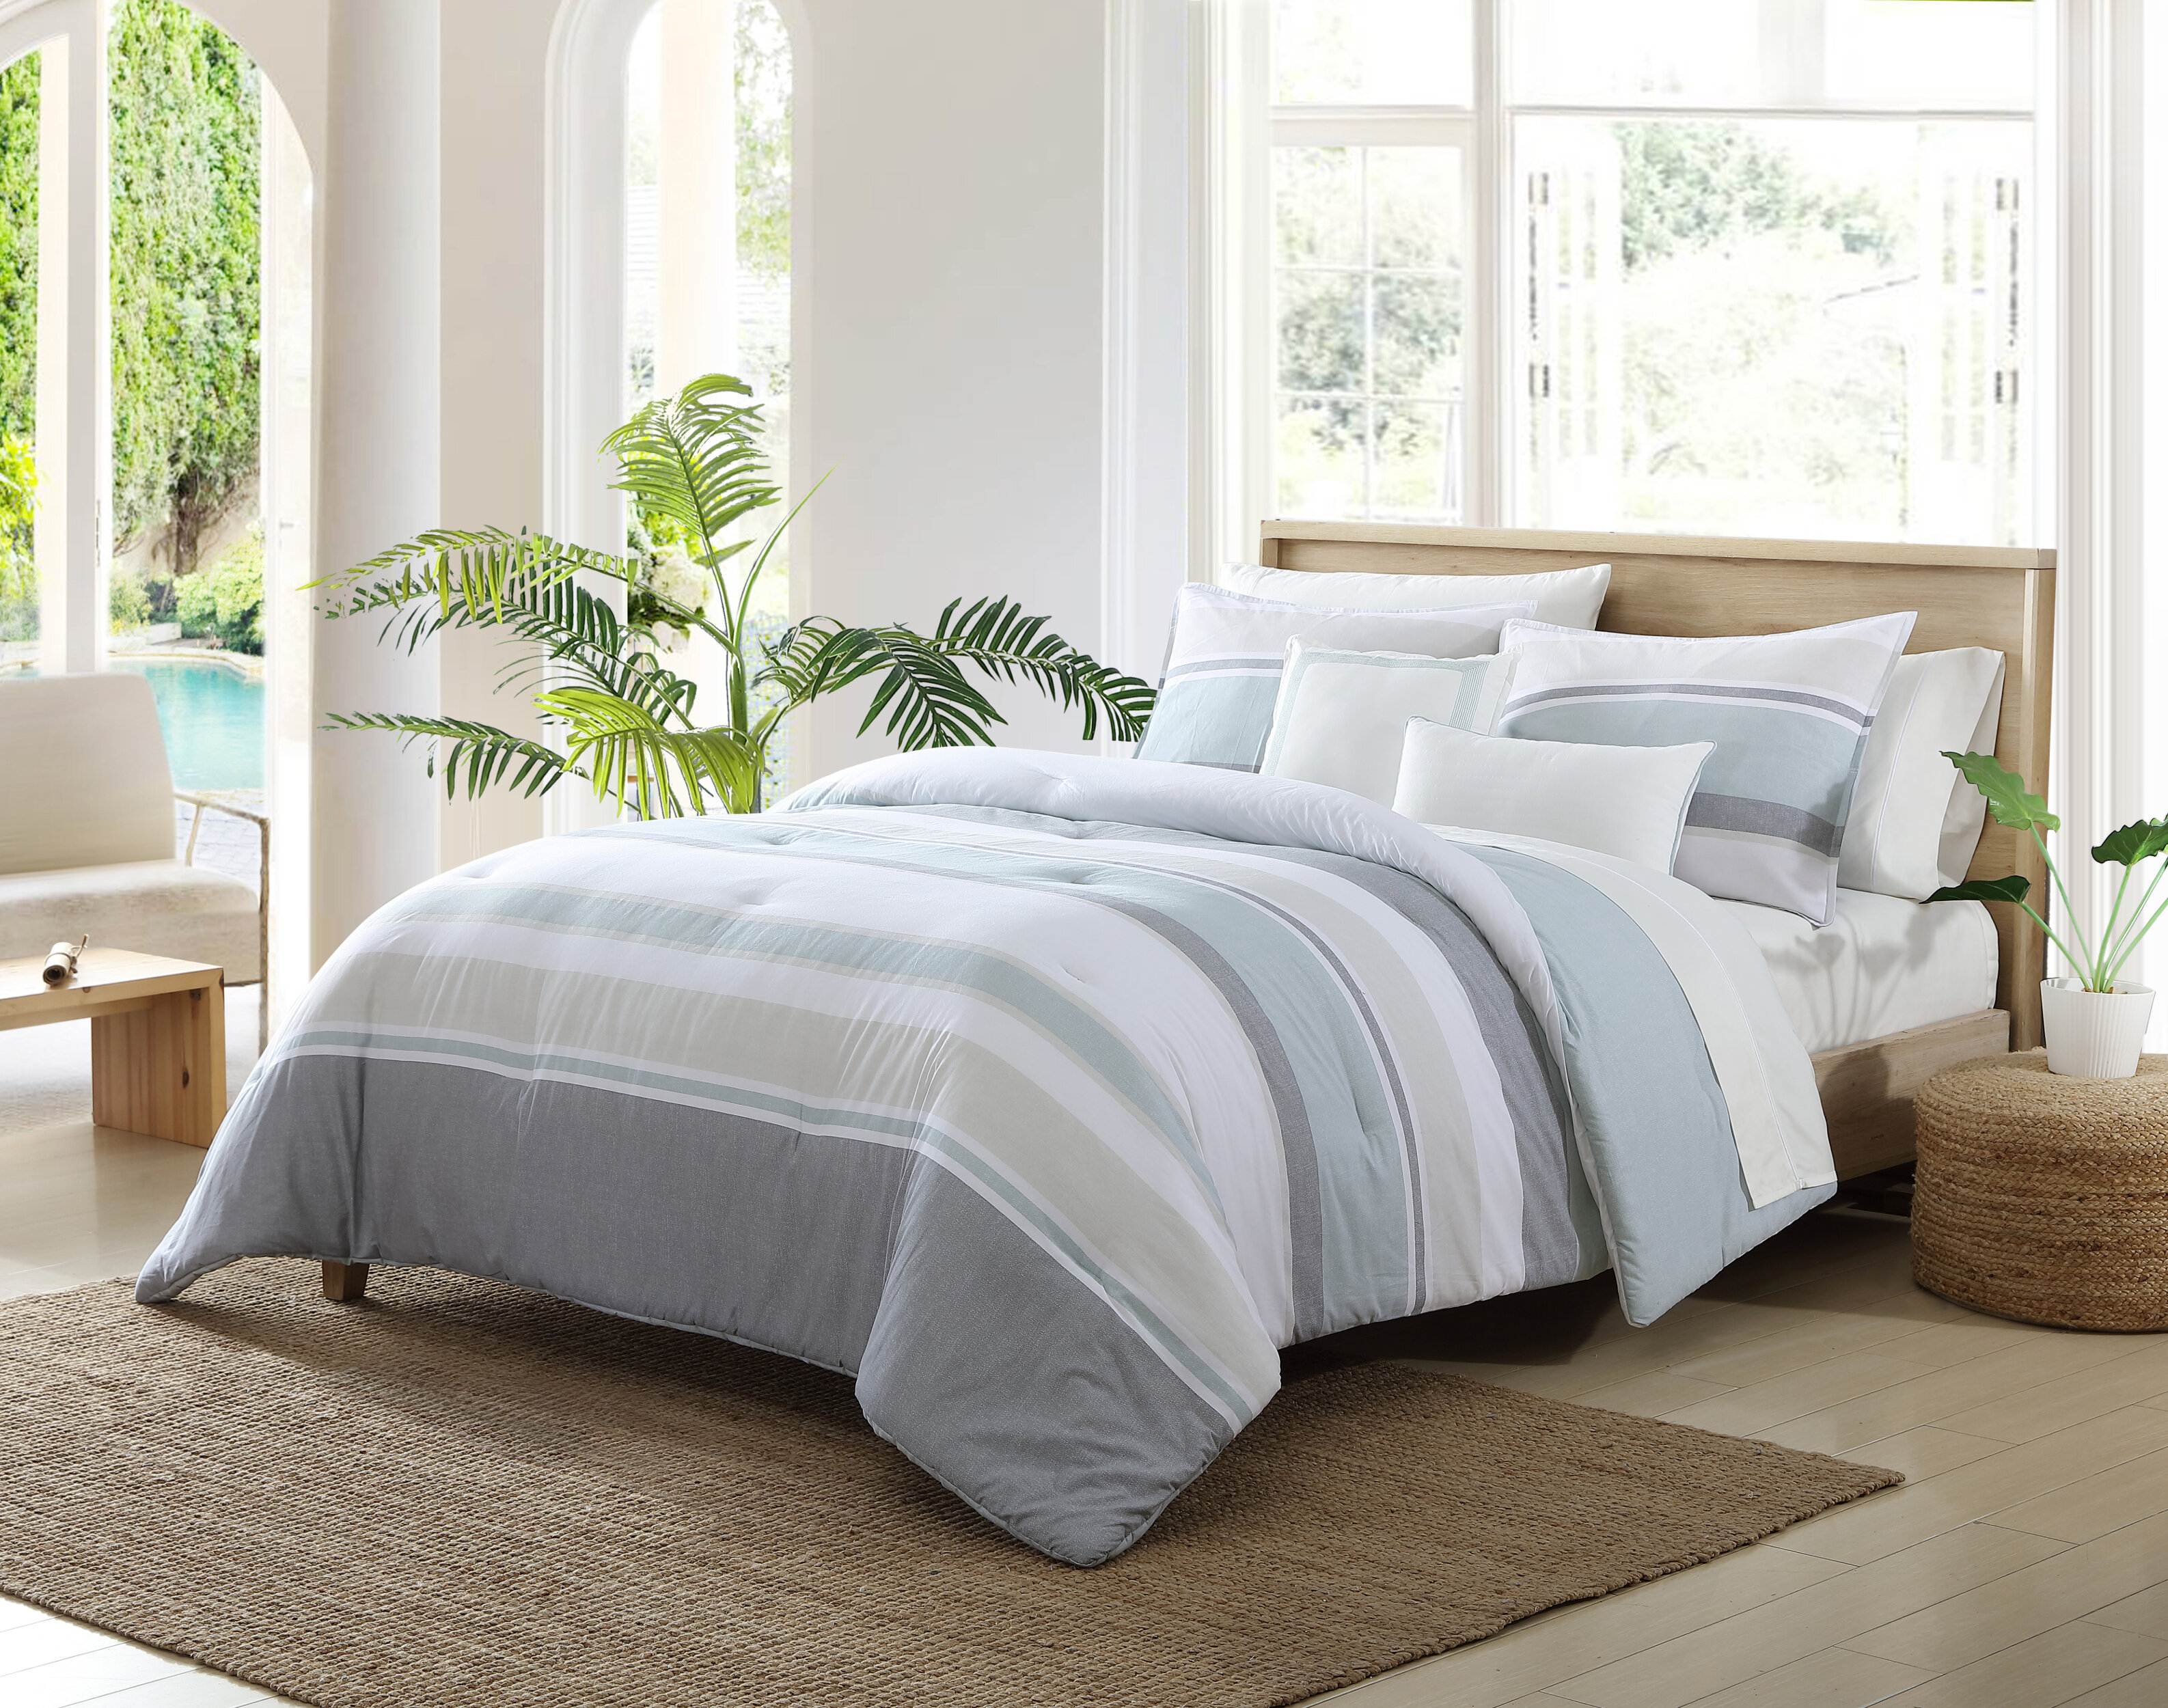 Nautica Westport Standard Cotton Reversible 3 Piece Comforter Set & Reviews